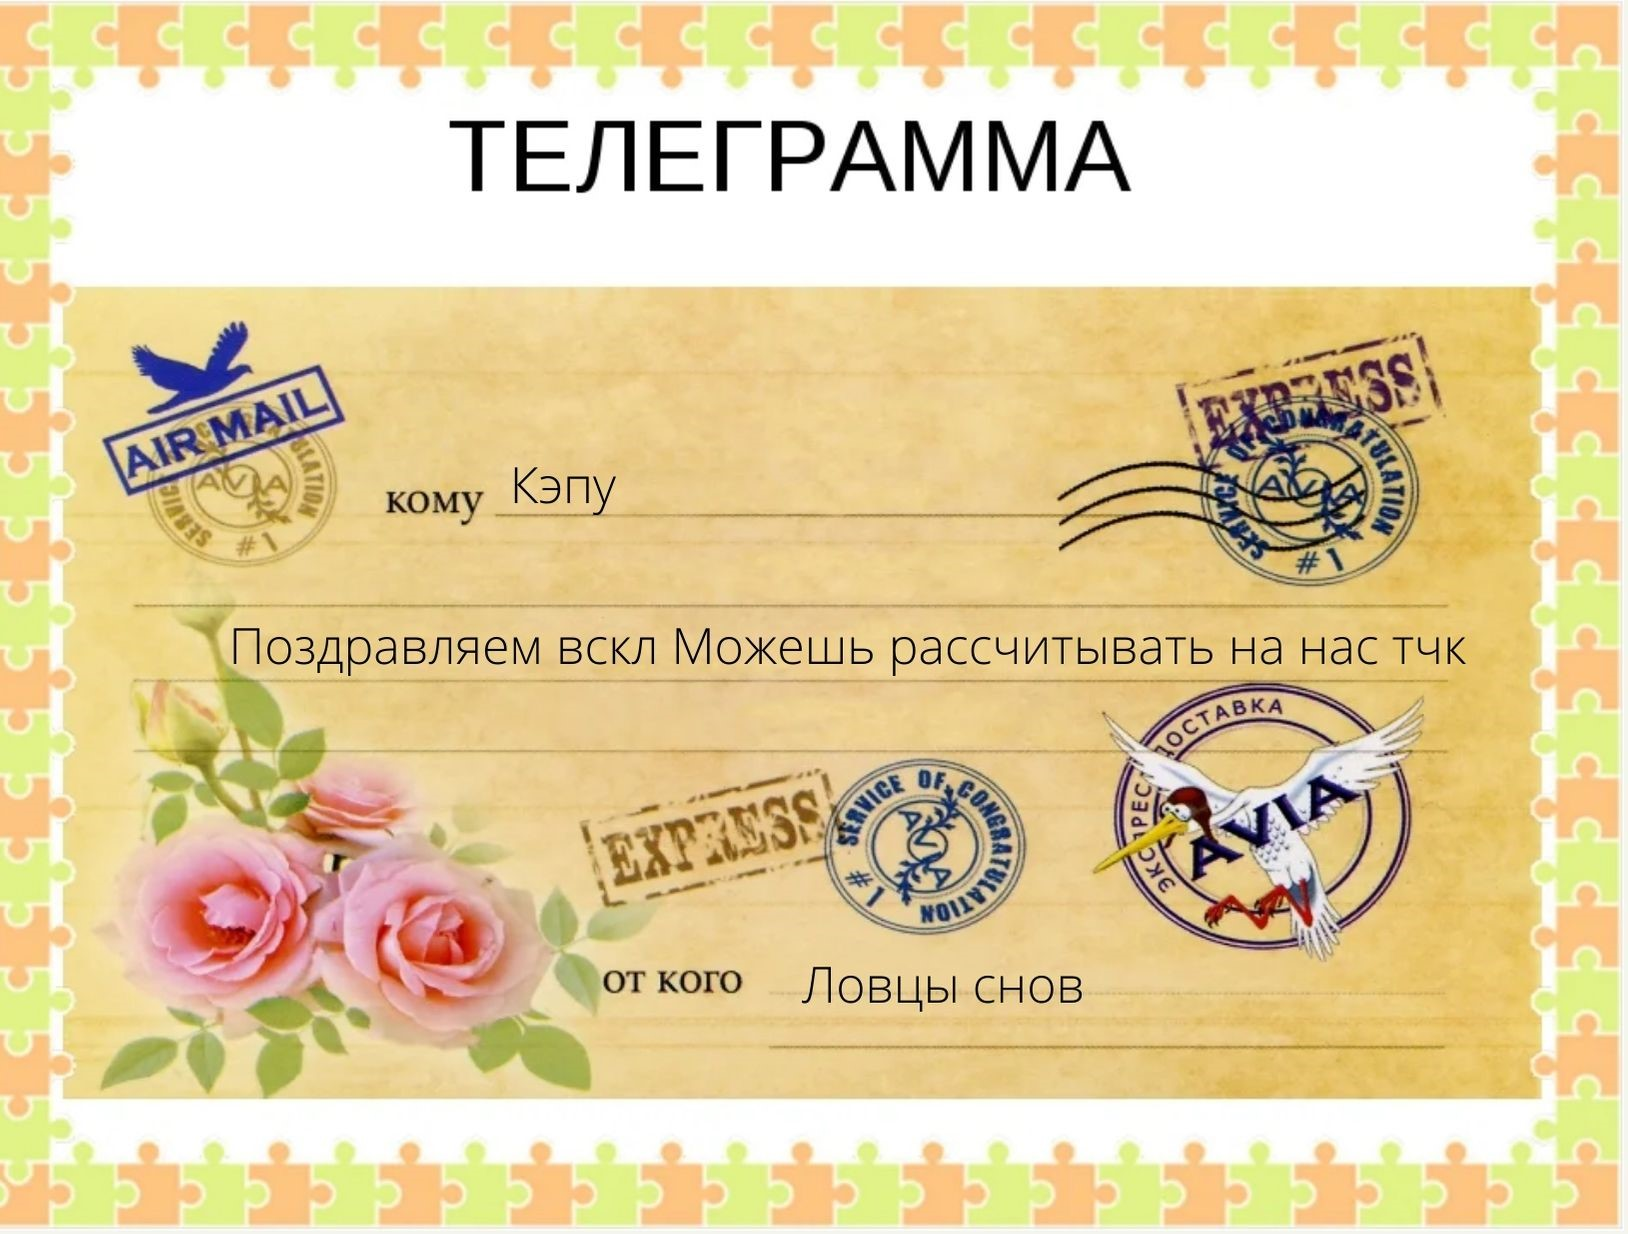 Сайт телеграмма на русском регистрация бесплатно фото 27